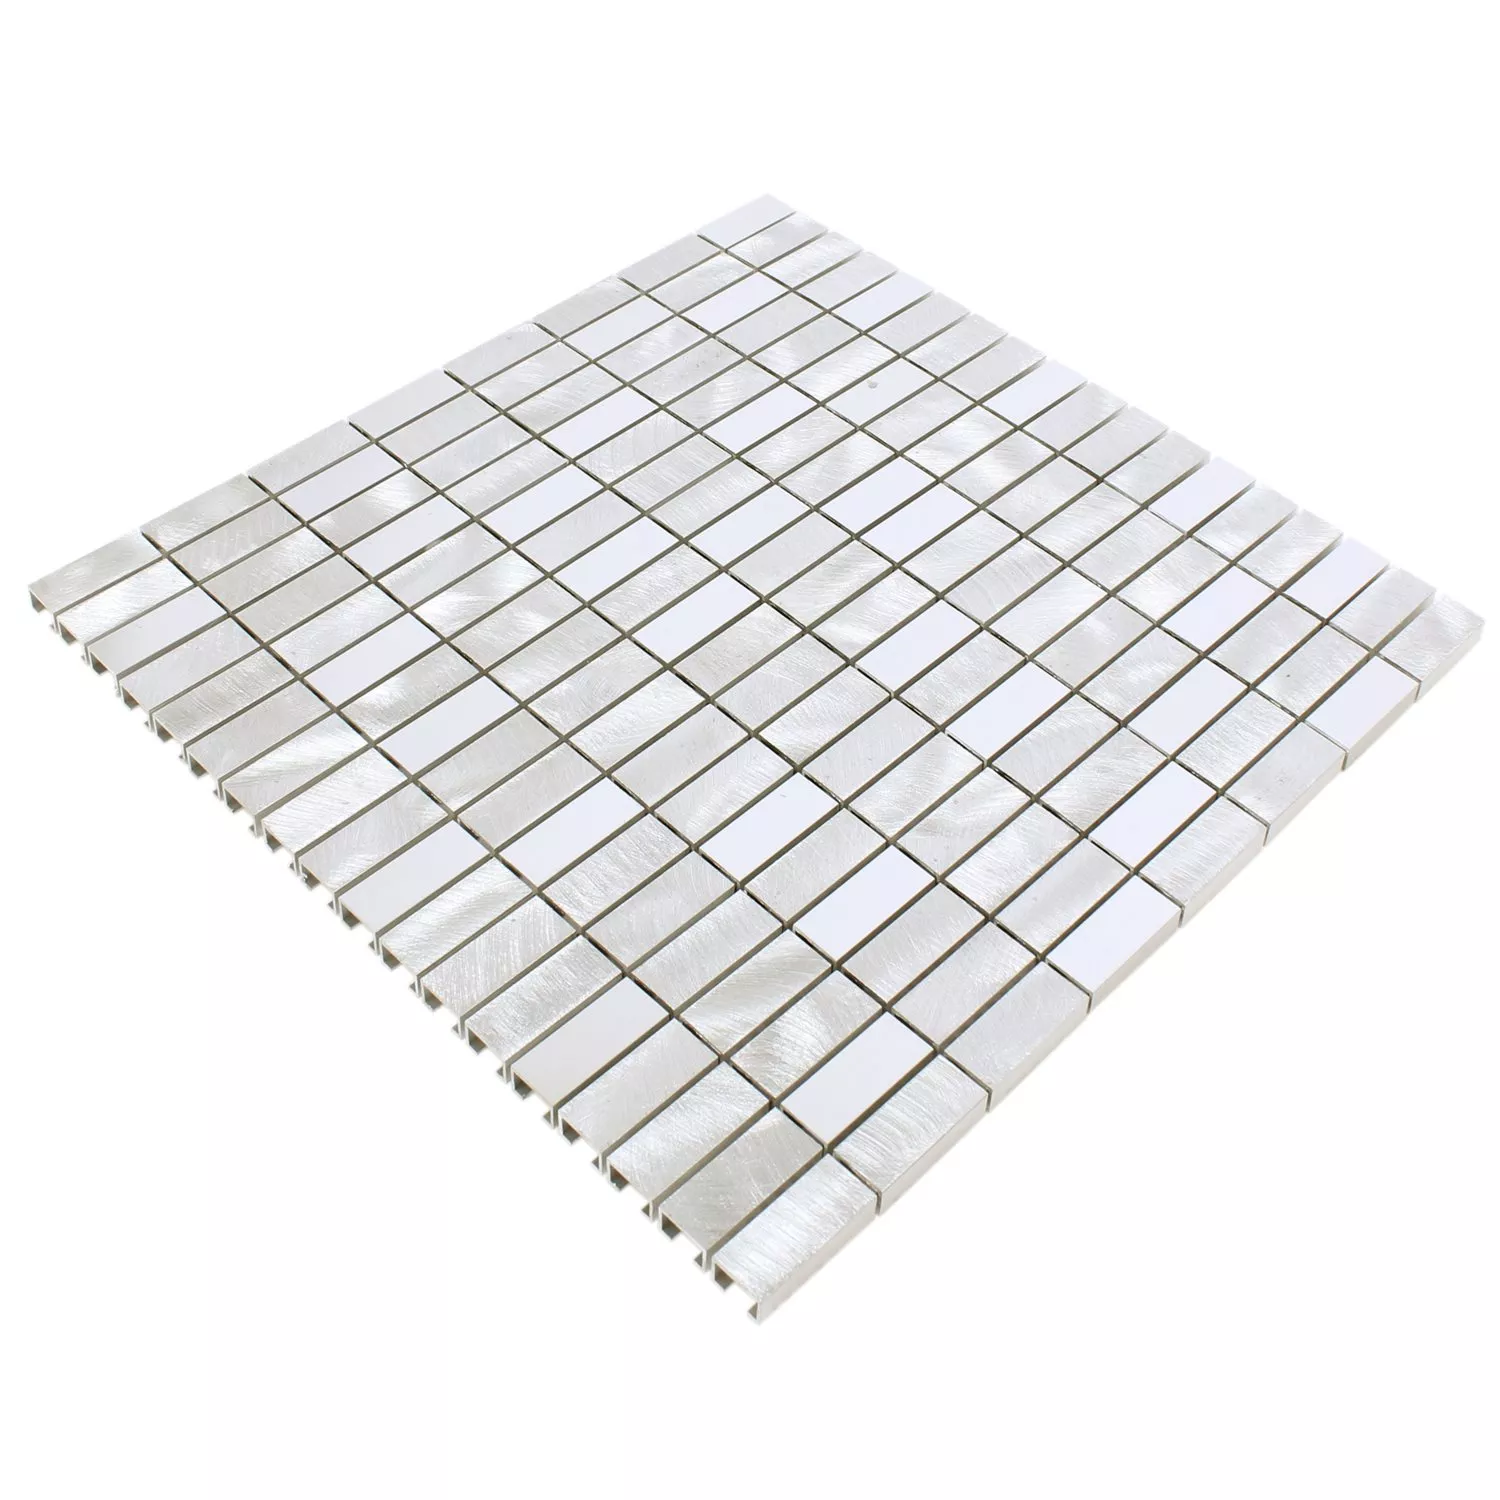 Sample Mosaic Tiles Aluminium Arriba Silver